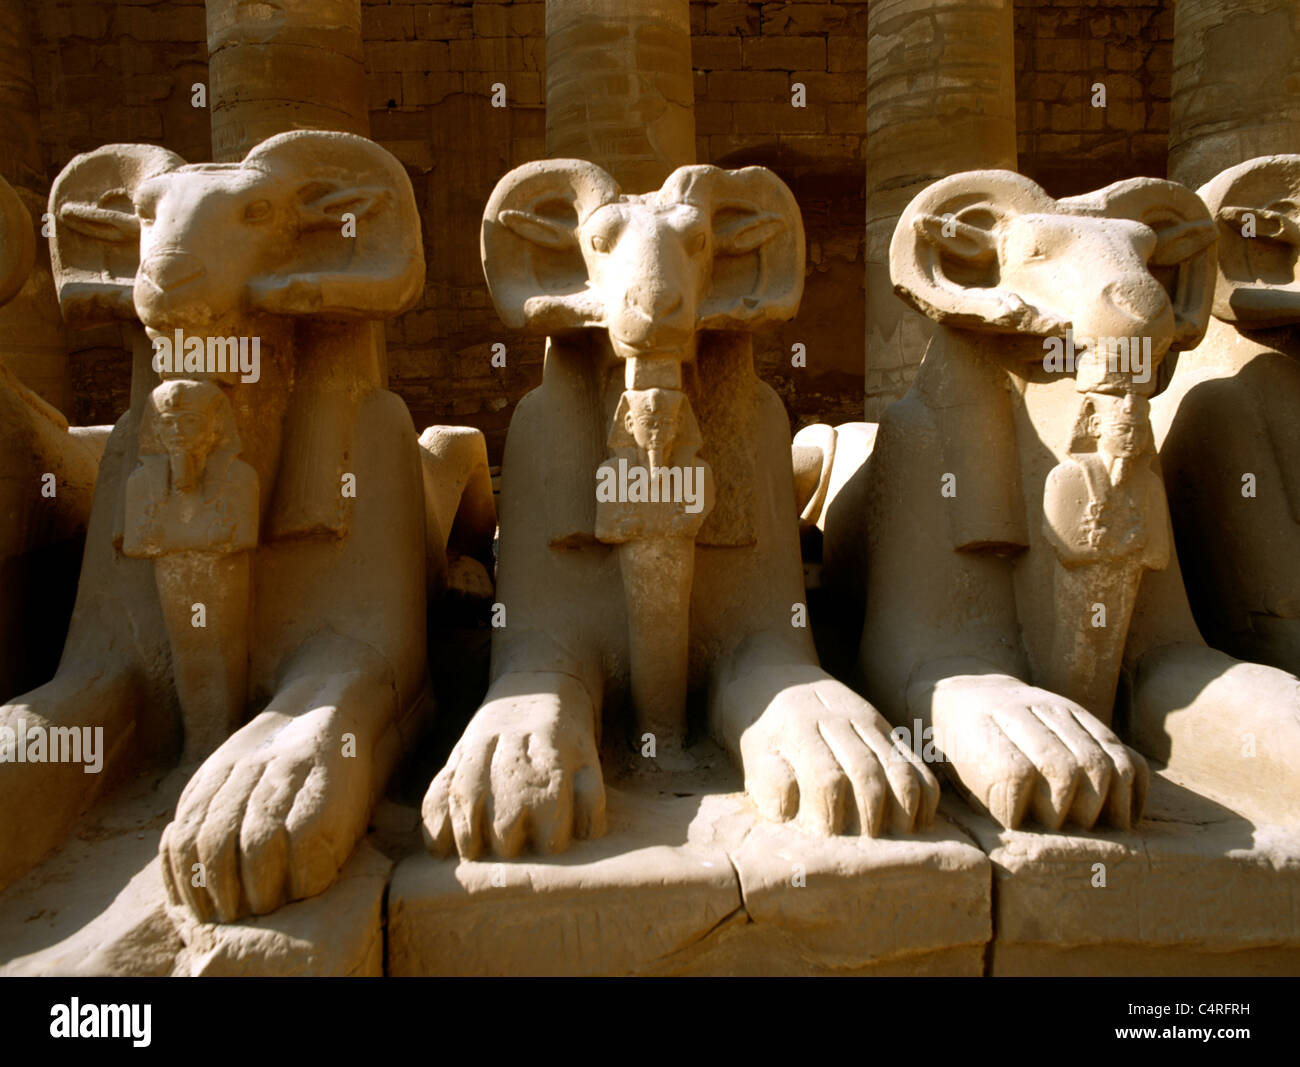 Complejo Templo Karnak Egipto Avenida de Esfinges con cabeza de Ram El Ram simbolizando al dios egipcio Amón protegiendo las Efigies Reales de Rameses II en la forma de Osiris Foto de stock